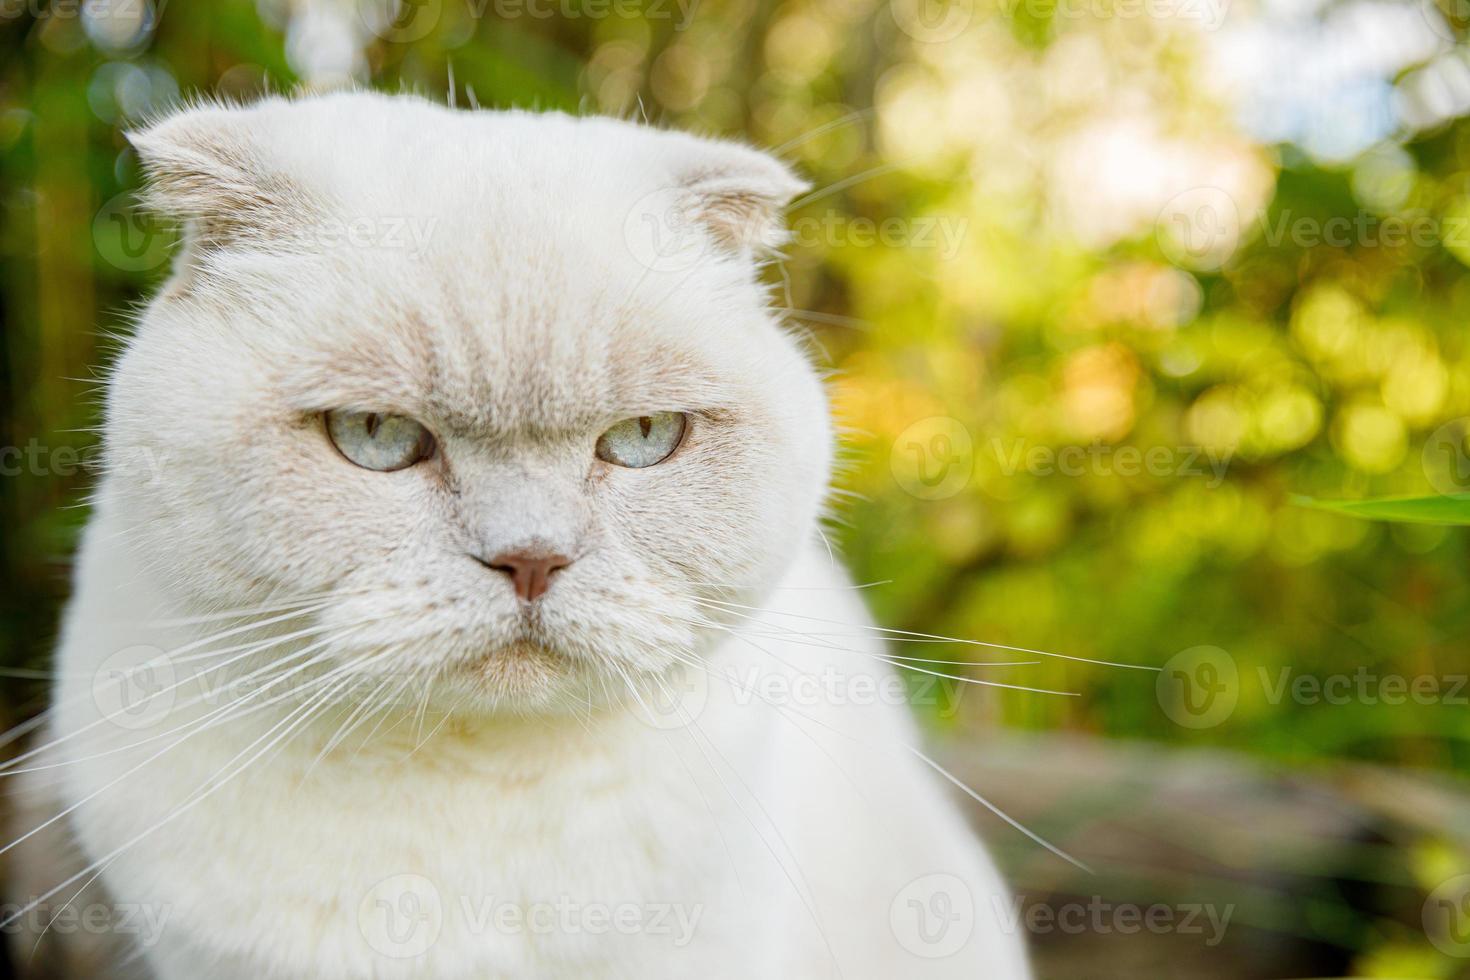 divertente ritratto di gattino bianco domestico dai capelli corti su sfondo verde cortile. gatto britannico che cammina all'aperto in giardino il giorno d'estate. concetto di salute e animali per la cura degli animali domestici. foto